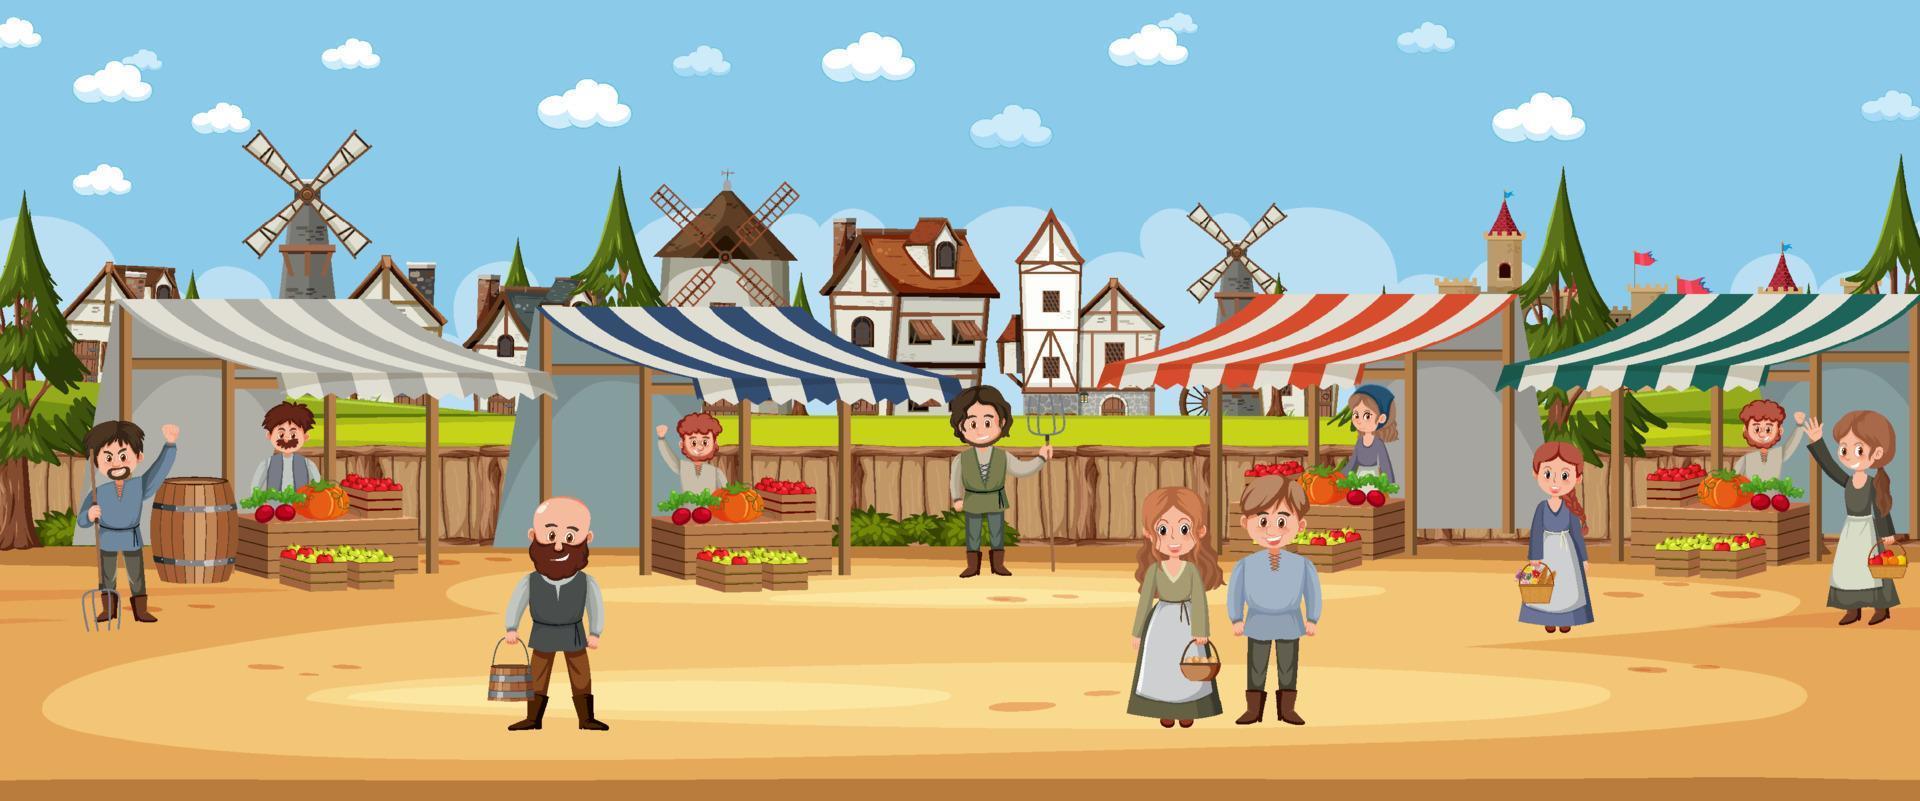 Escena de la ciudad medieval con aldeanos en el mercado. vector